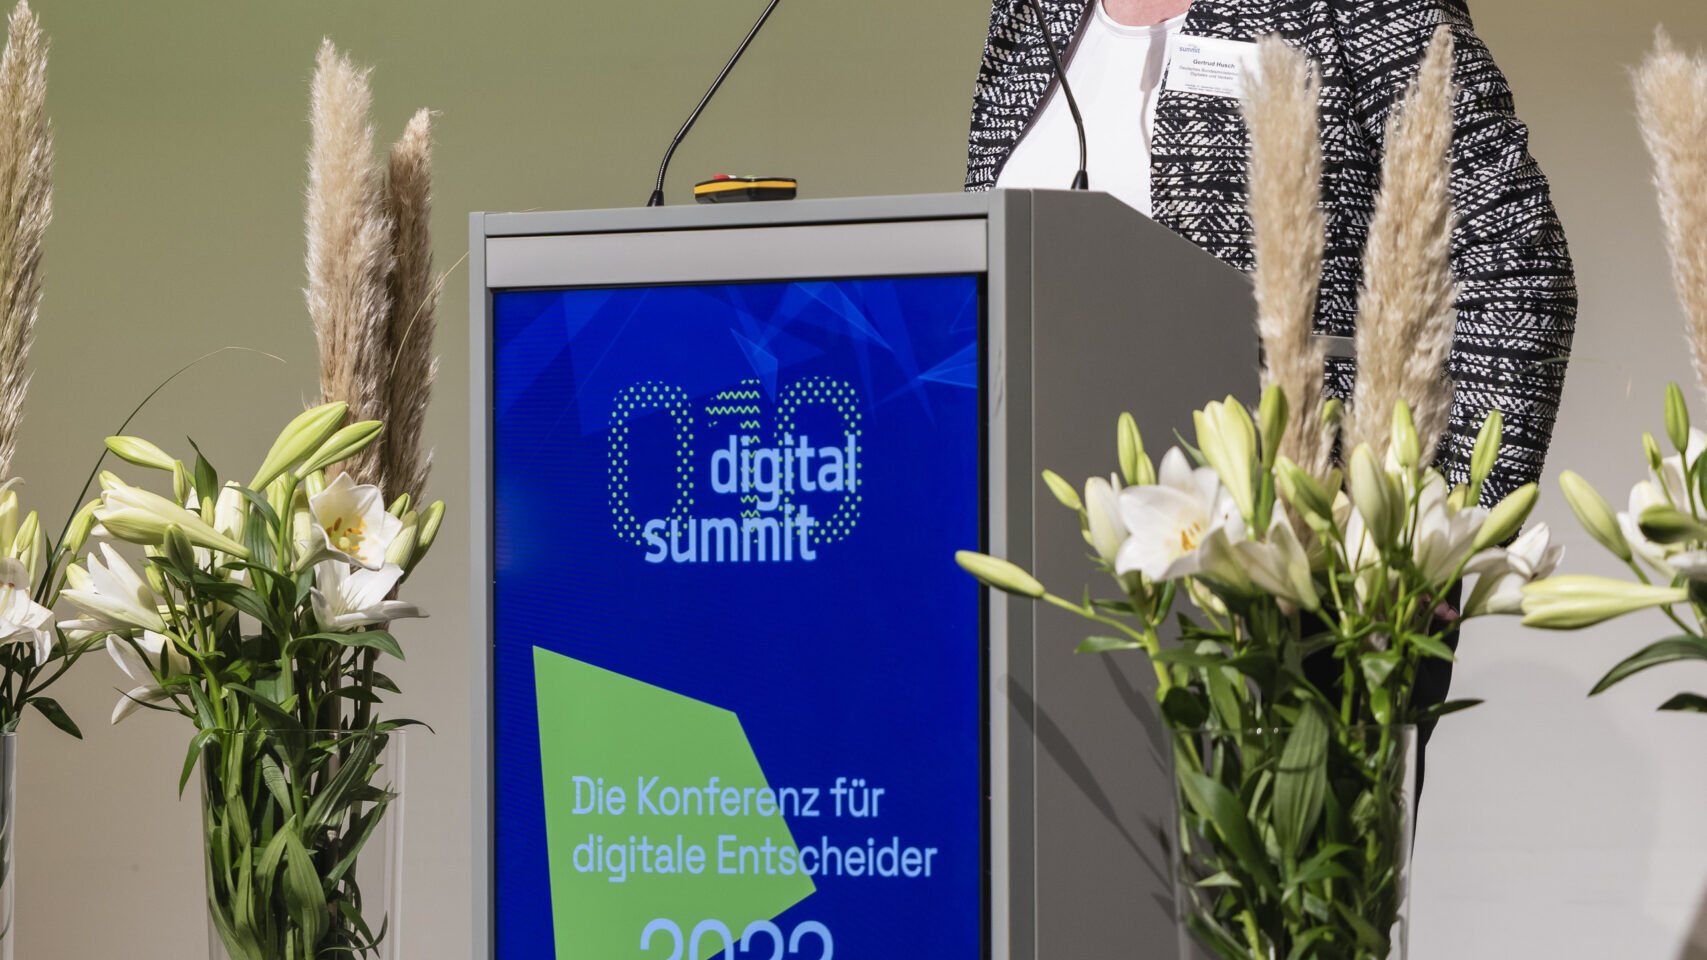 Vaduz'daki “Dijital Zirve” etkinliğinin 2022 baskısı